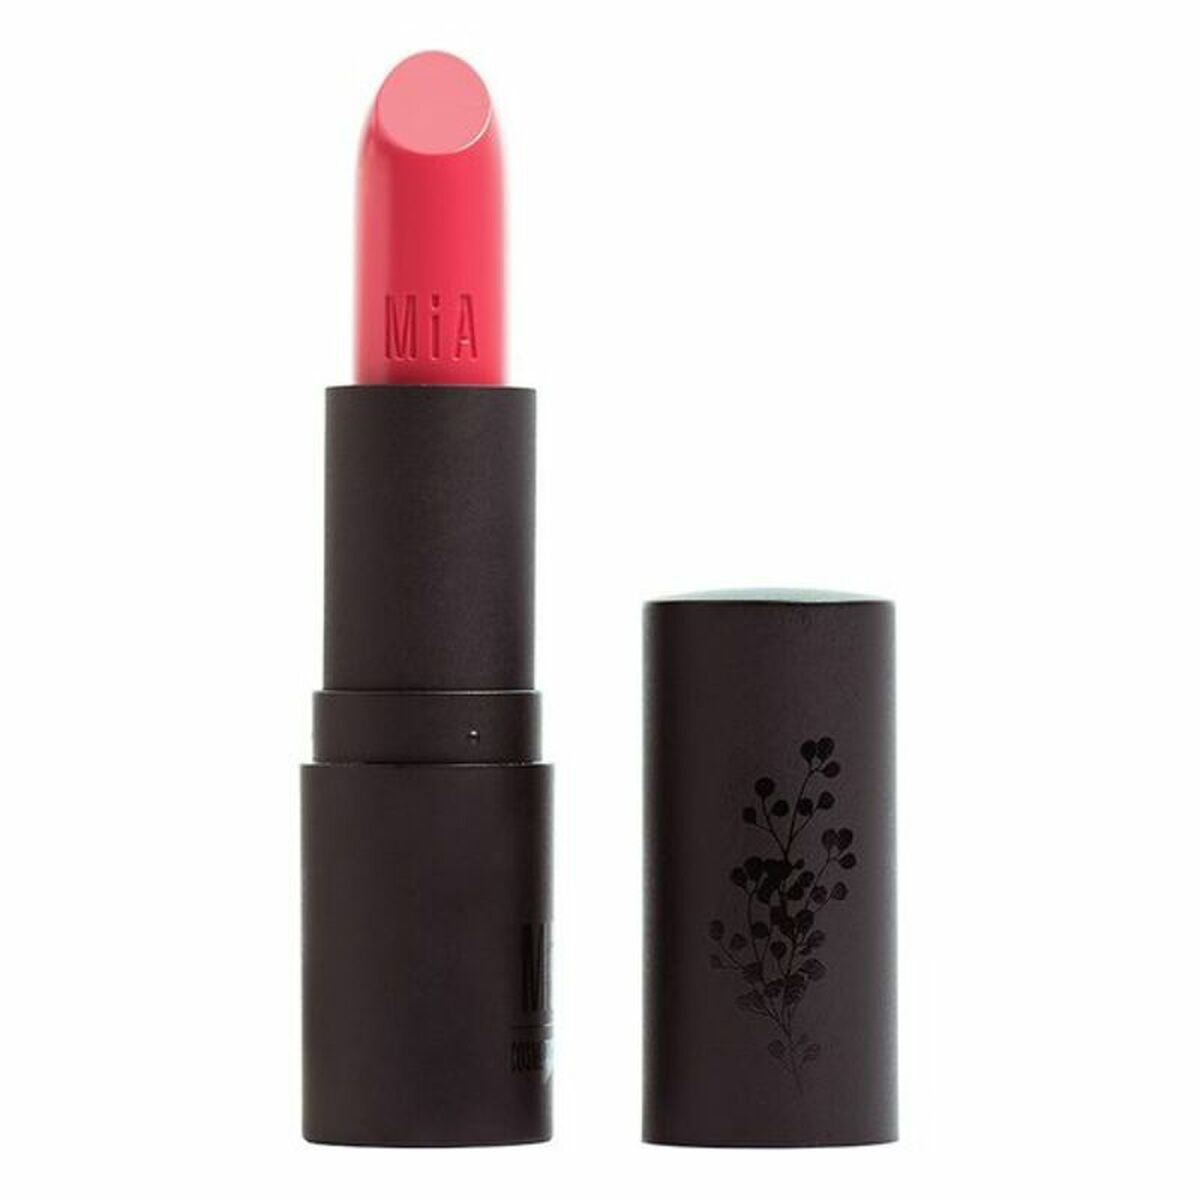 Feuchtigkeitsspendender Lippenstift Mia Cosmetics Paris 509-Caramel Coral (4 g) - CA International 